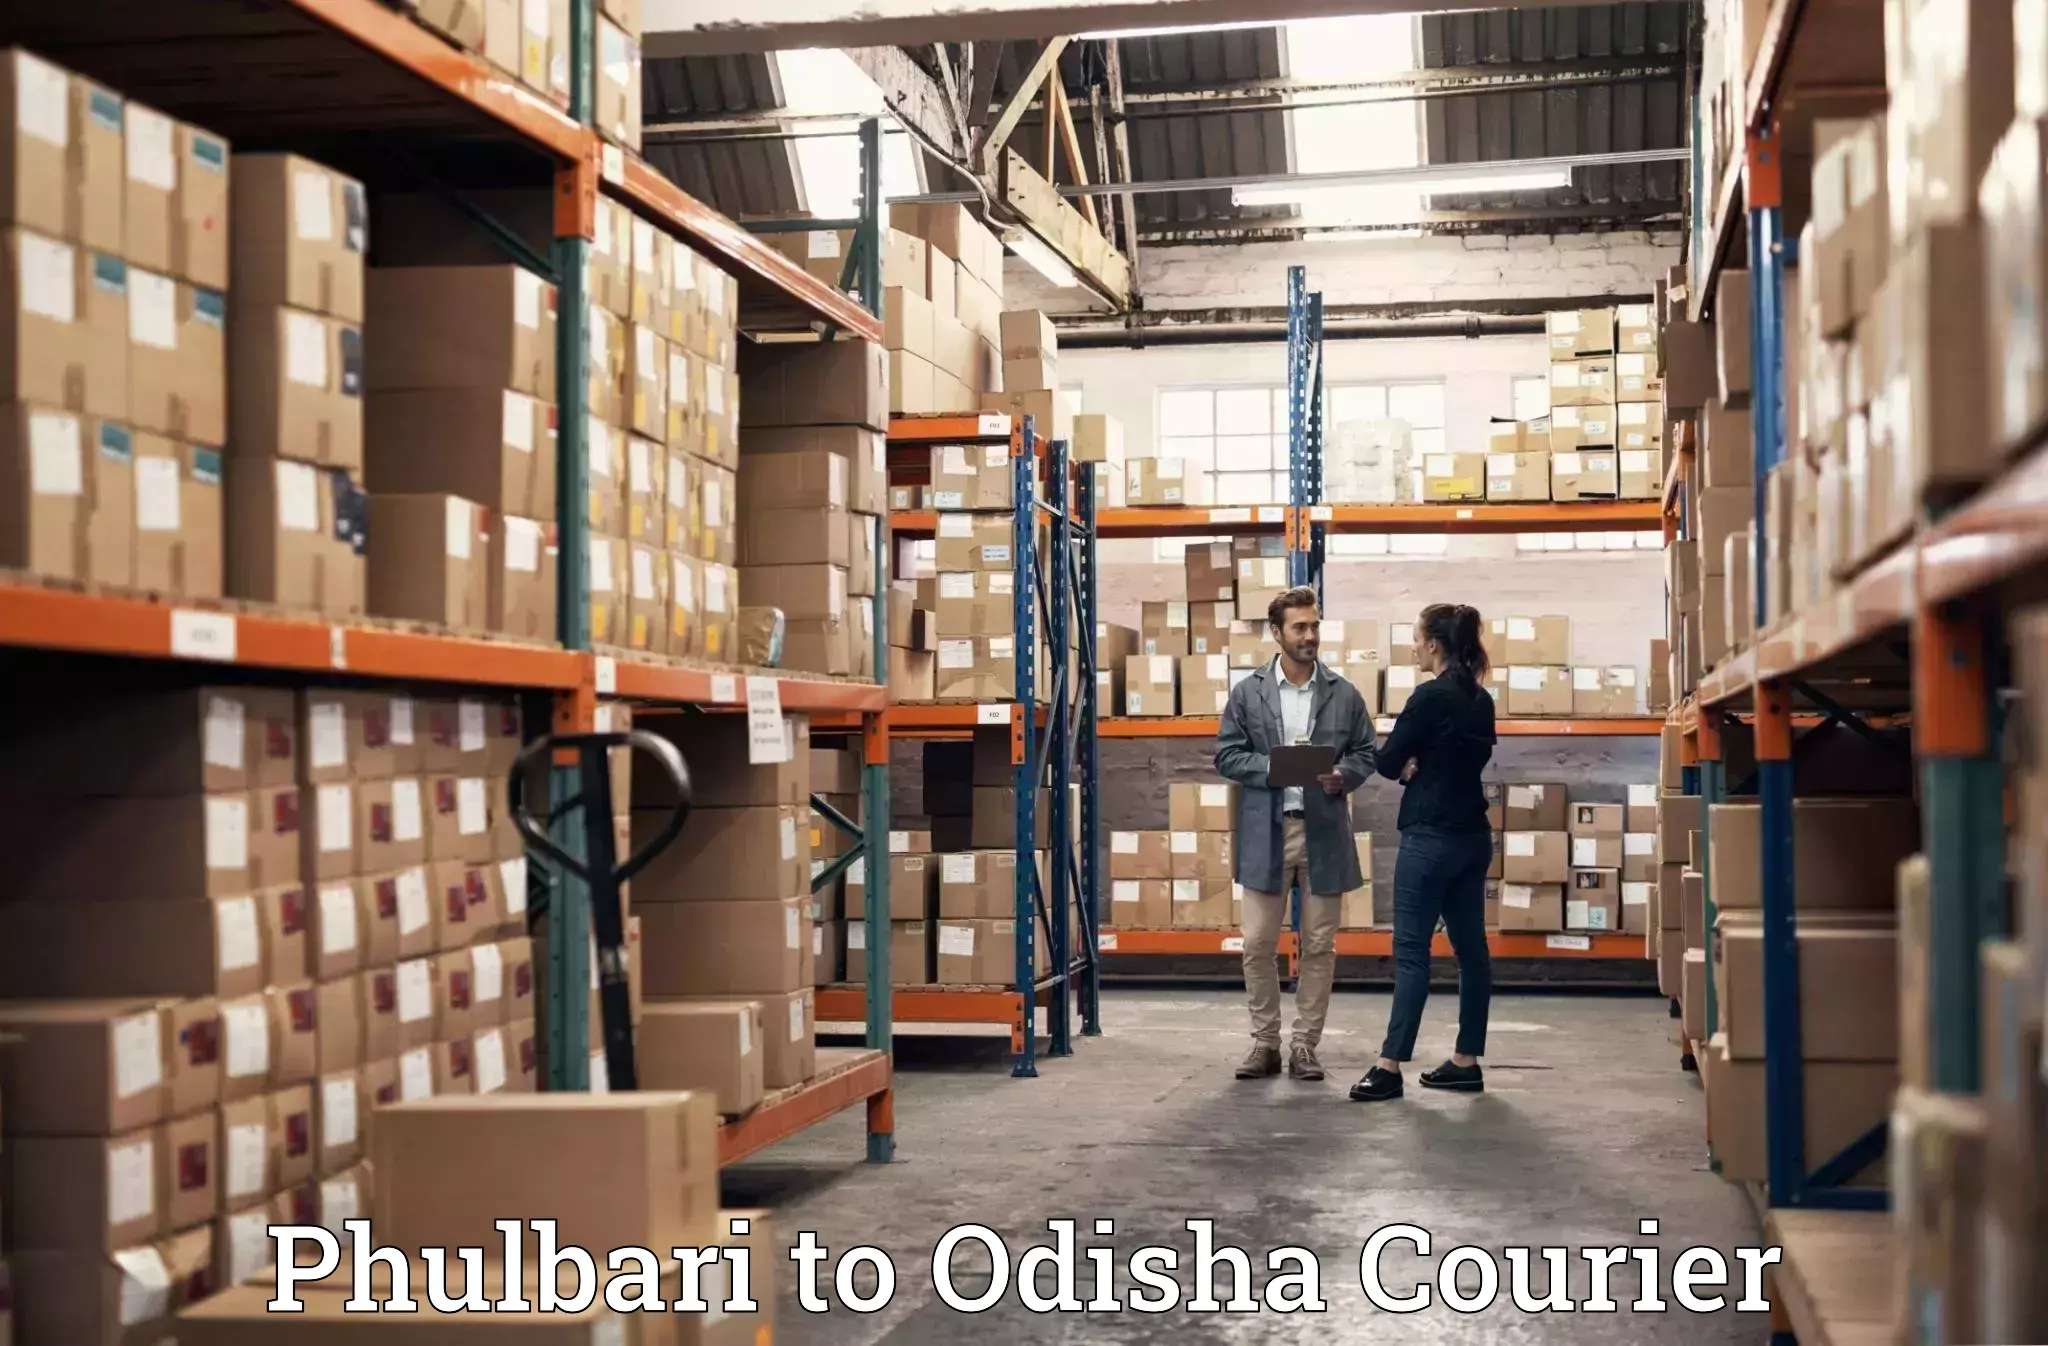 Furniture delivery service Phulbari to Odisha